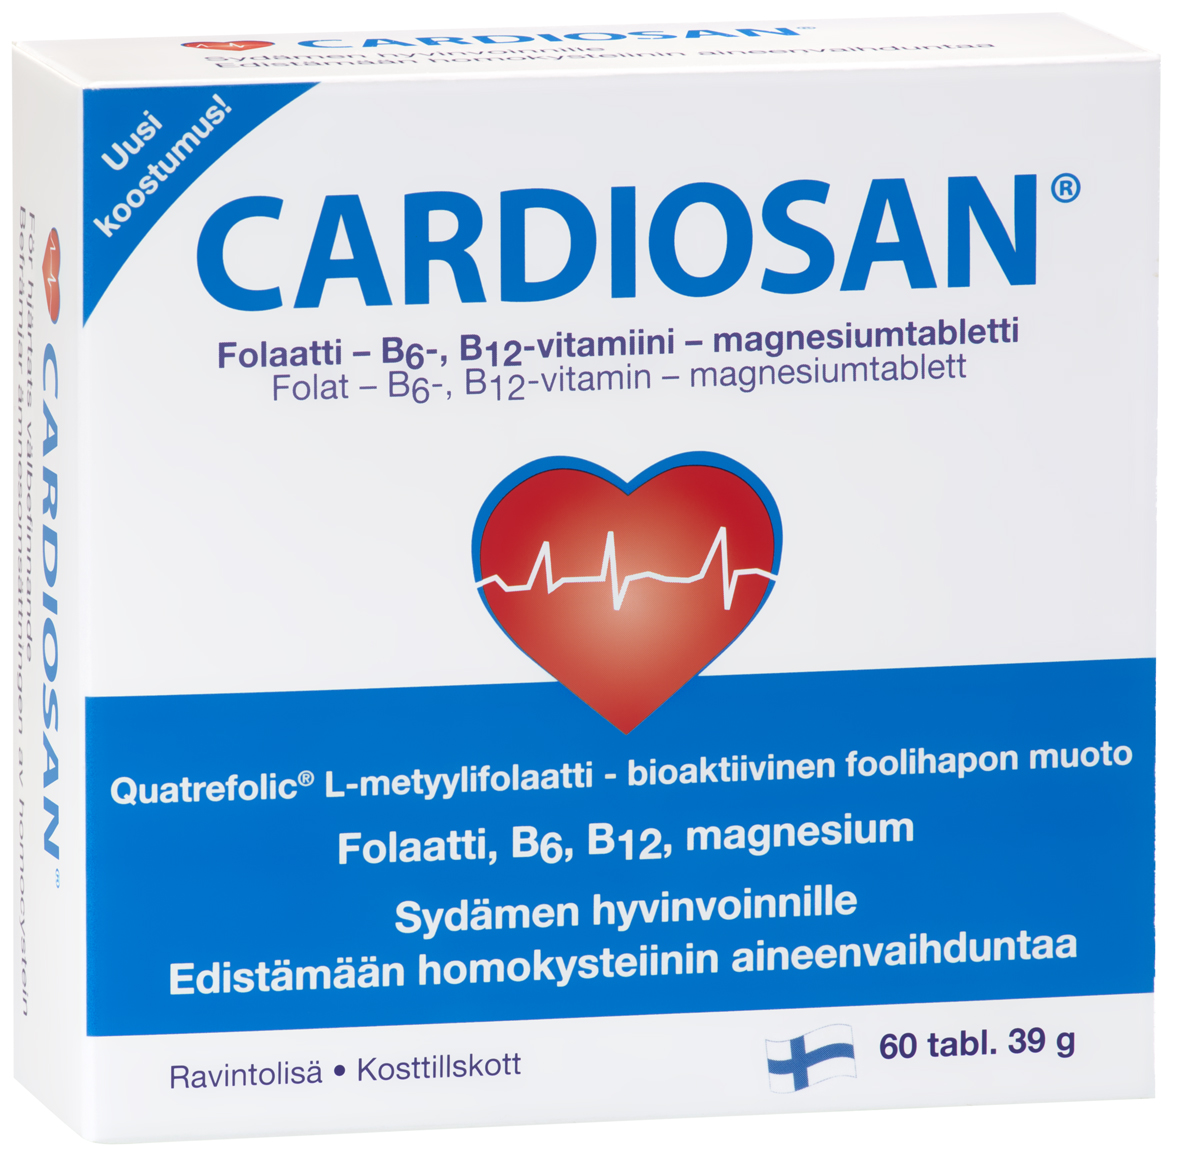 Cardiosan 60 pills/39g